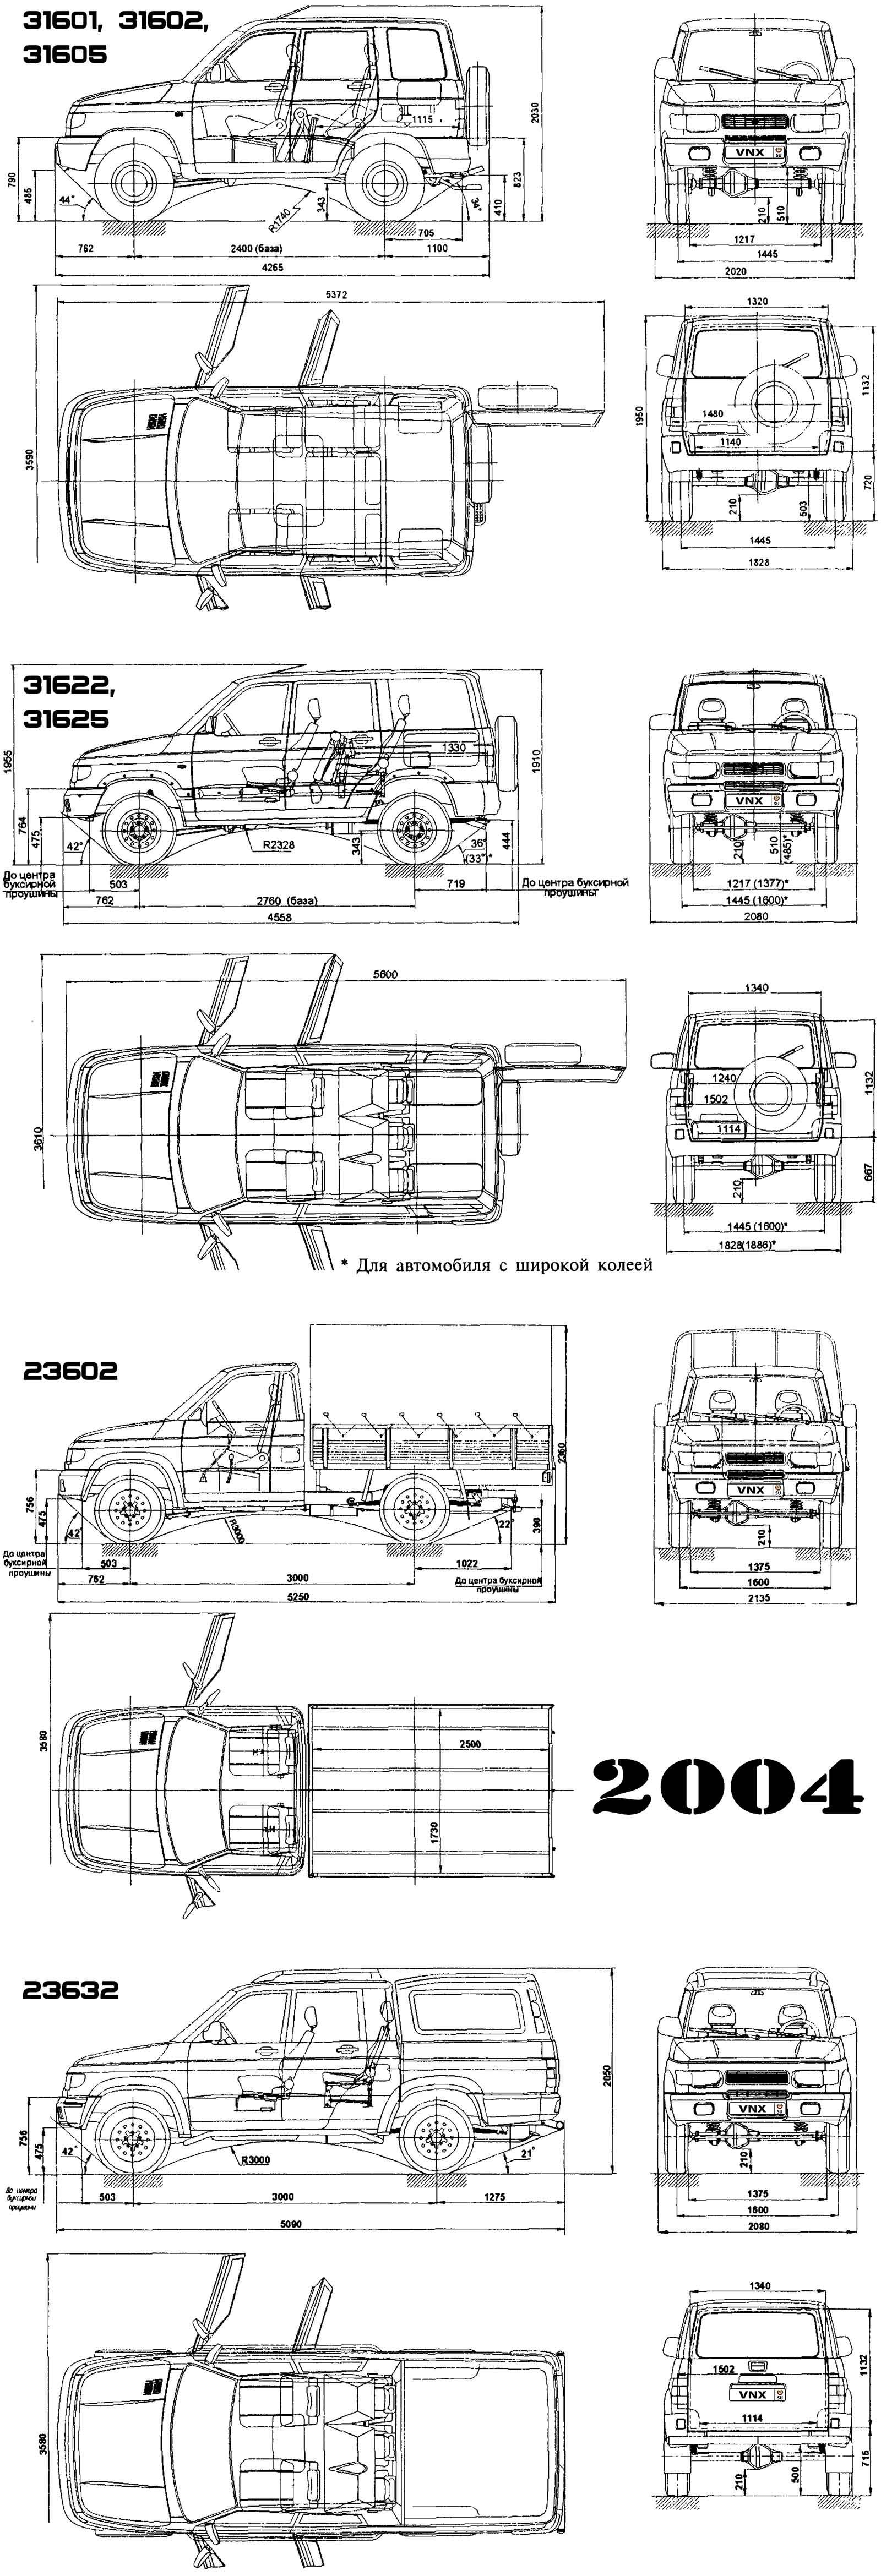 Габаритные размеры УАЗ-31601, УАЗ-31602, УАЗ-31605, УАЗ-31622, УАЗ-31625, УАЗ-23602, УАЗ-23632 1997-2005 (dimensions UAZ SIMBIR)